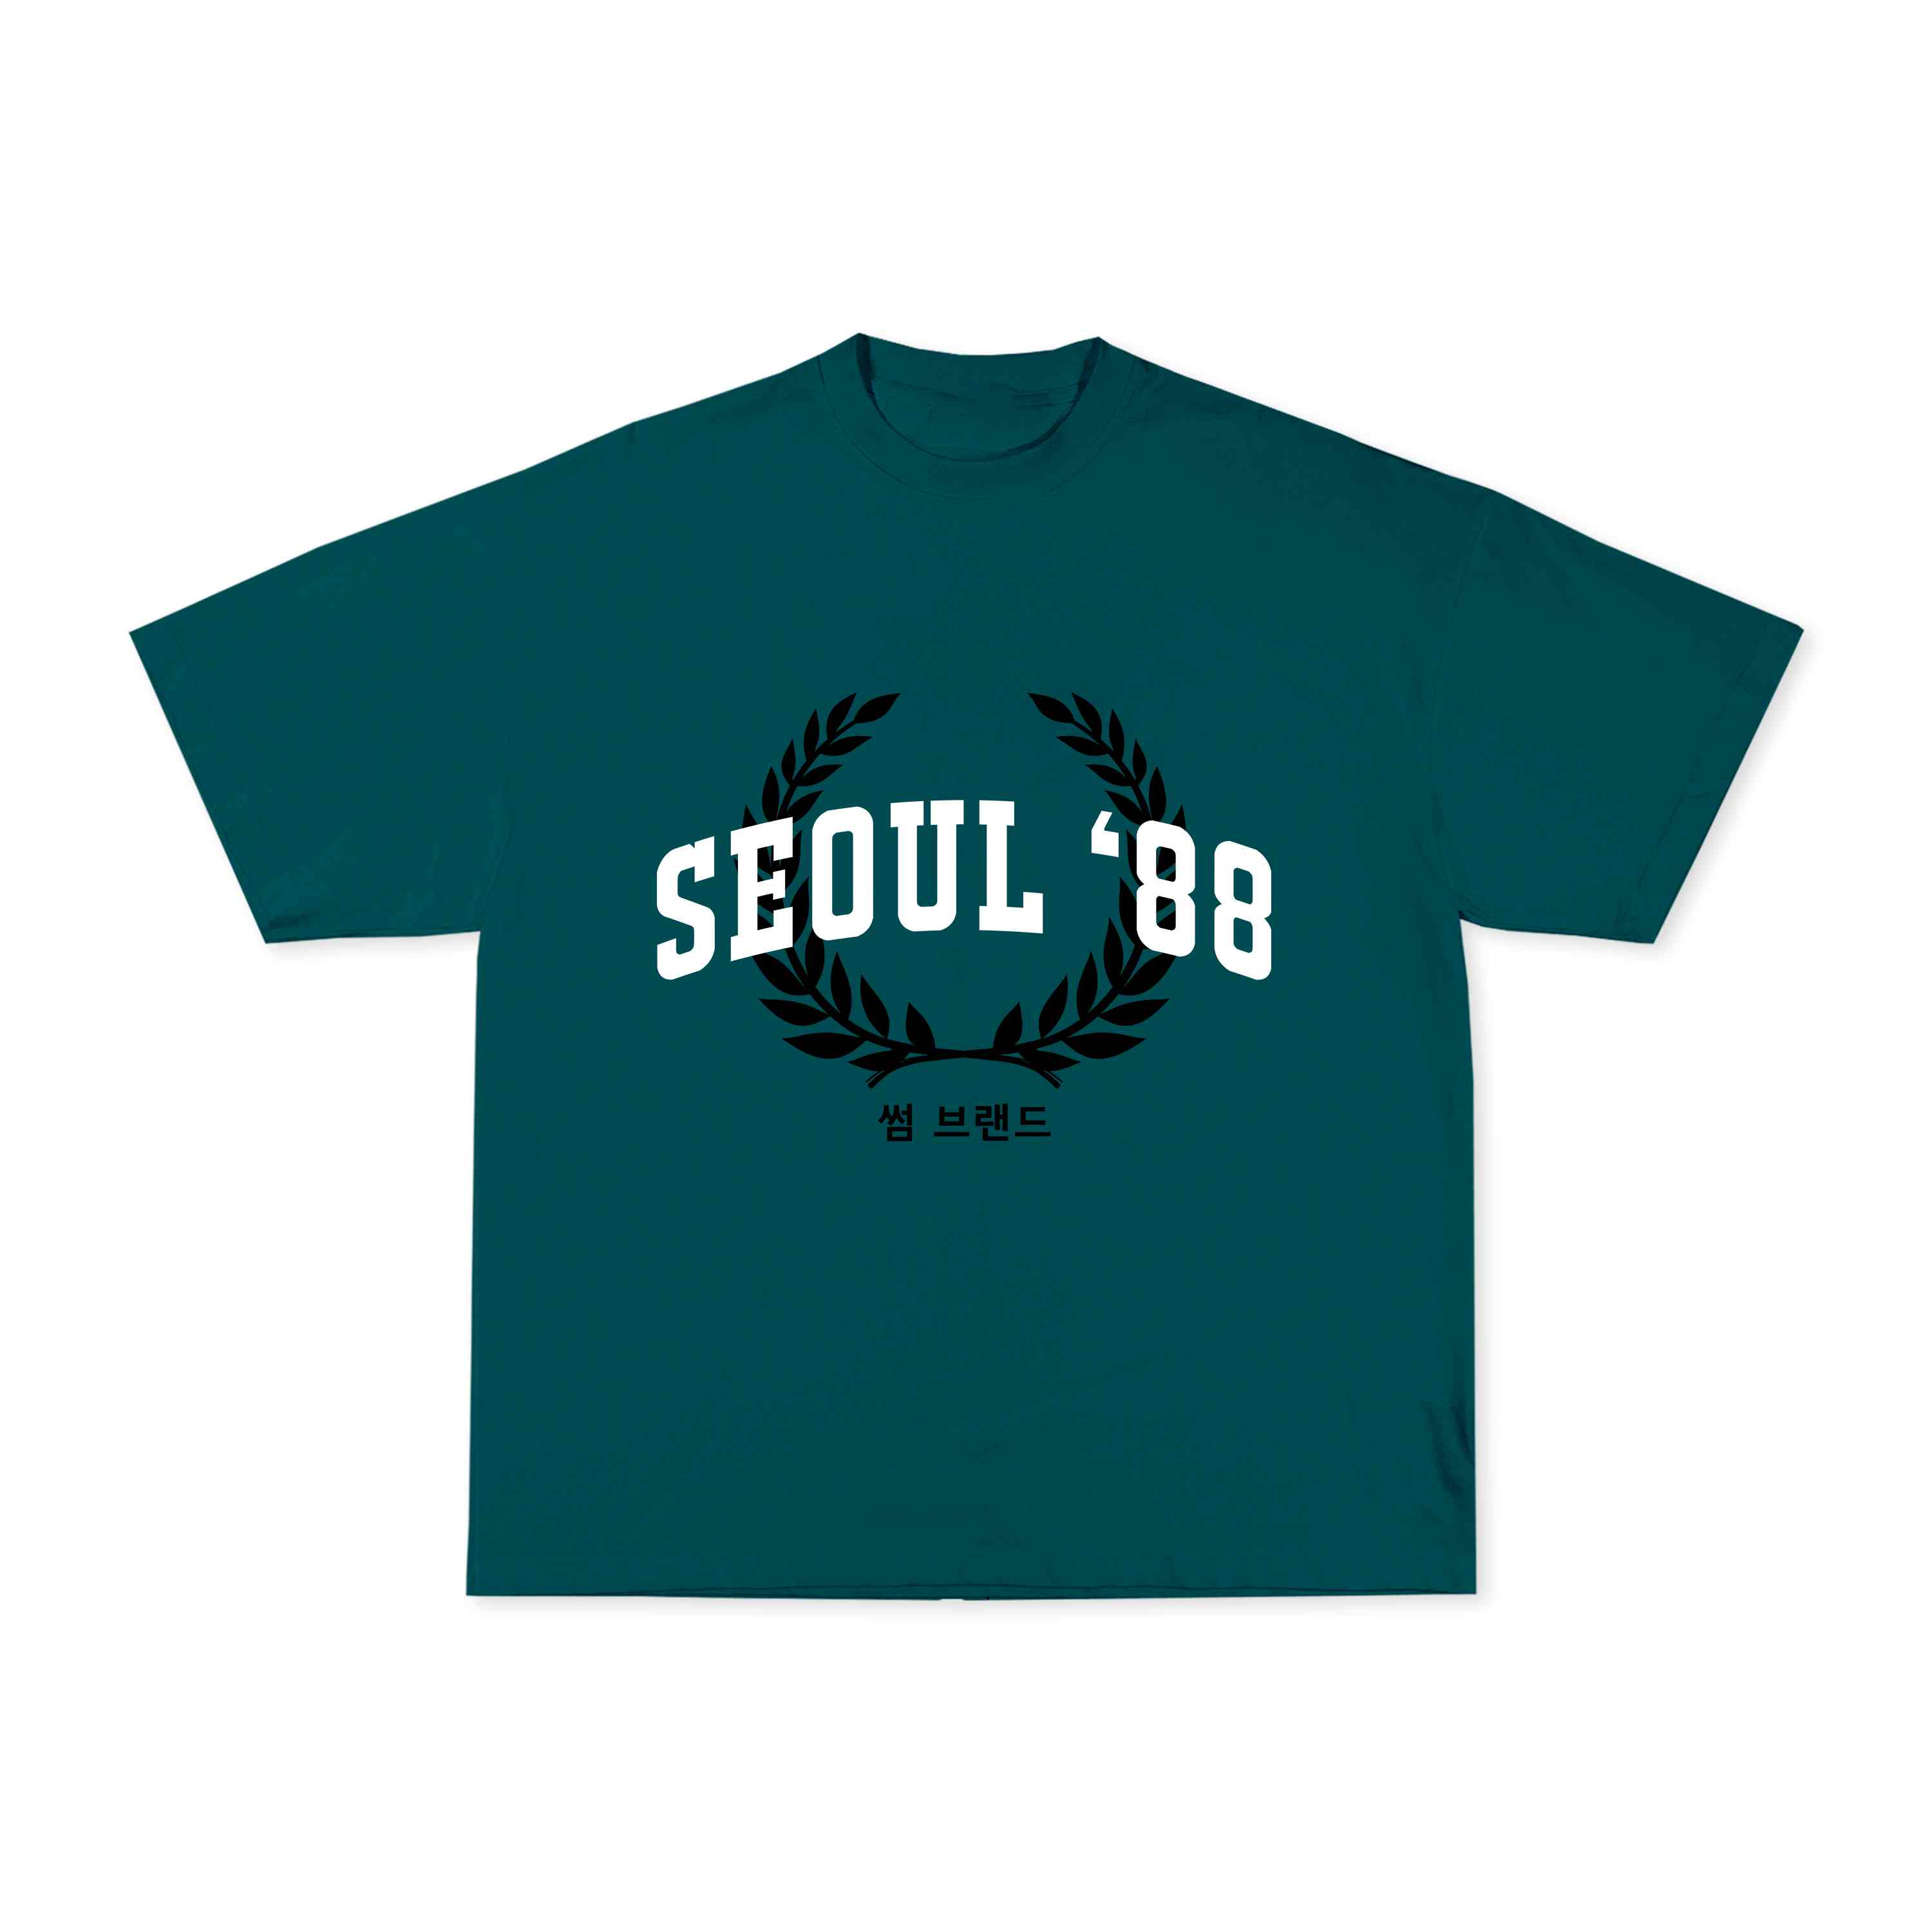 SEOUL 88 GREEN TEE